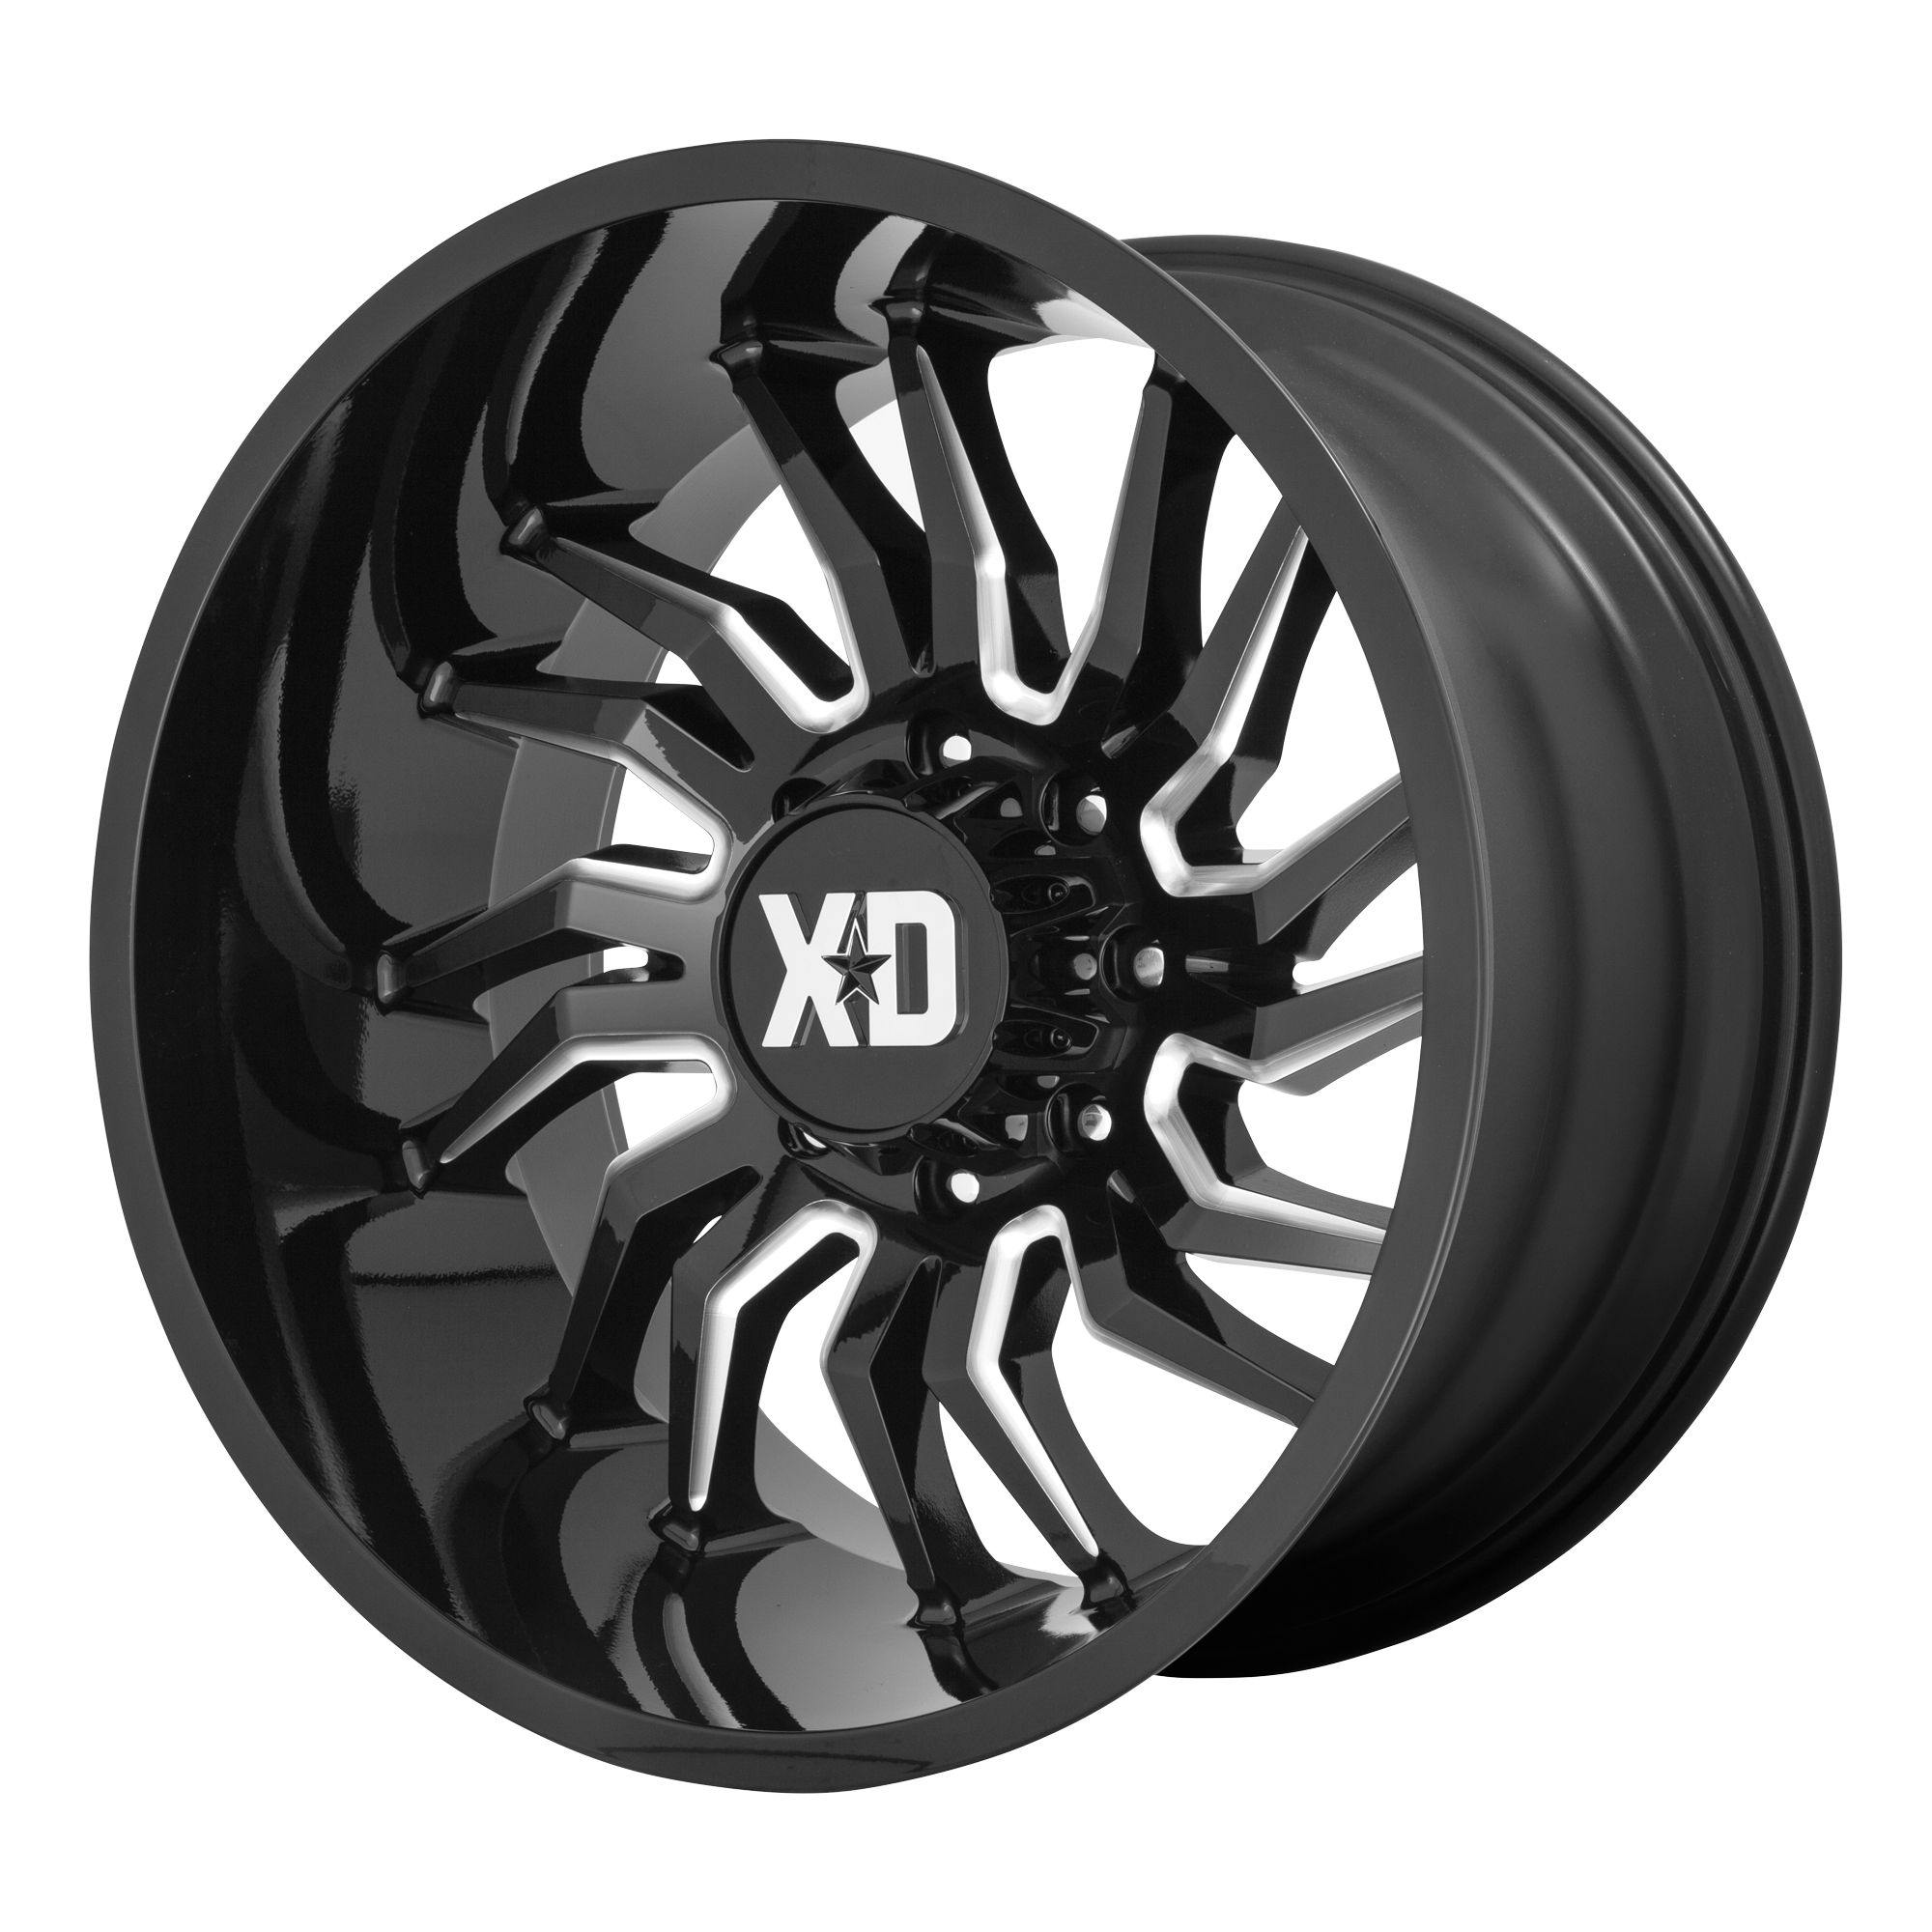 XD 20"x10" Non-Chrome Gloss Black Milled Custom Wheel ARSWCWXD85821080318N